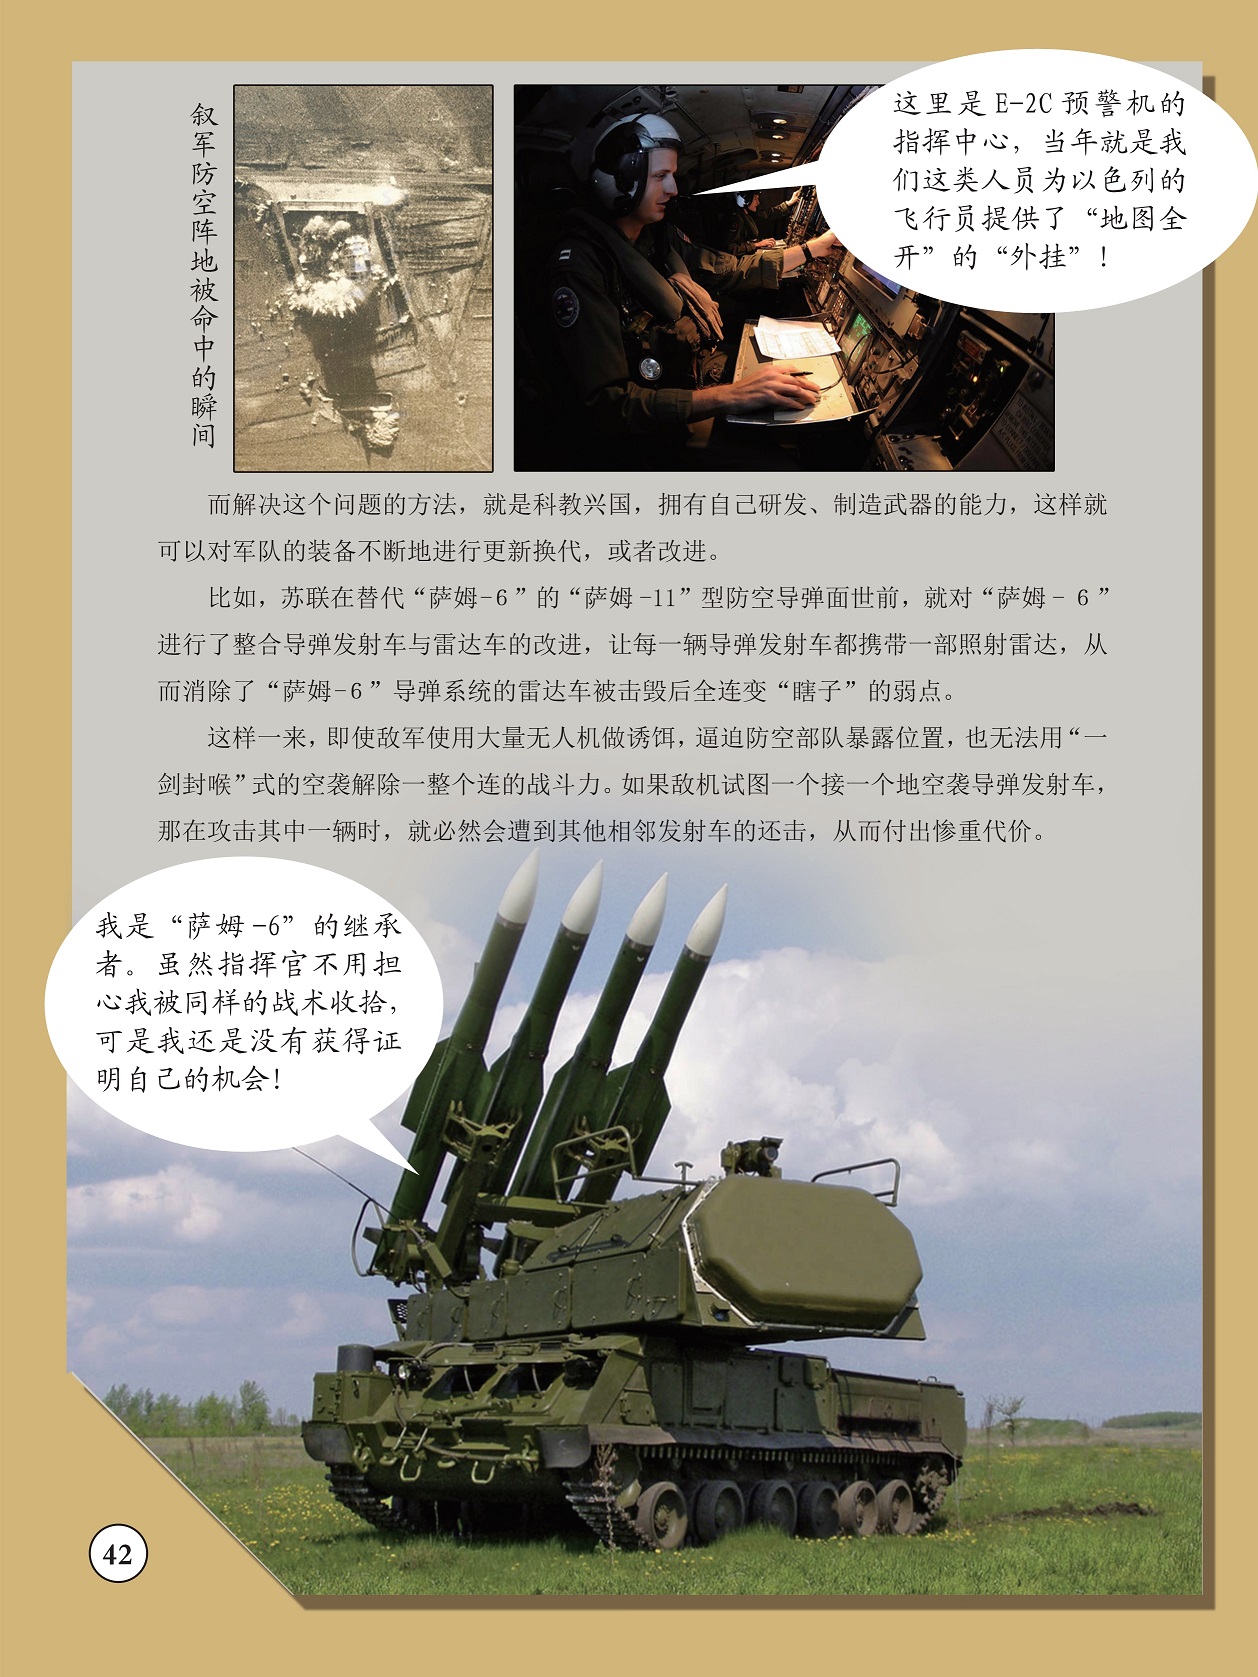 对军队的装备不断地进行更新换代,整合导弹发射车与雷达车的改进